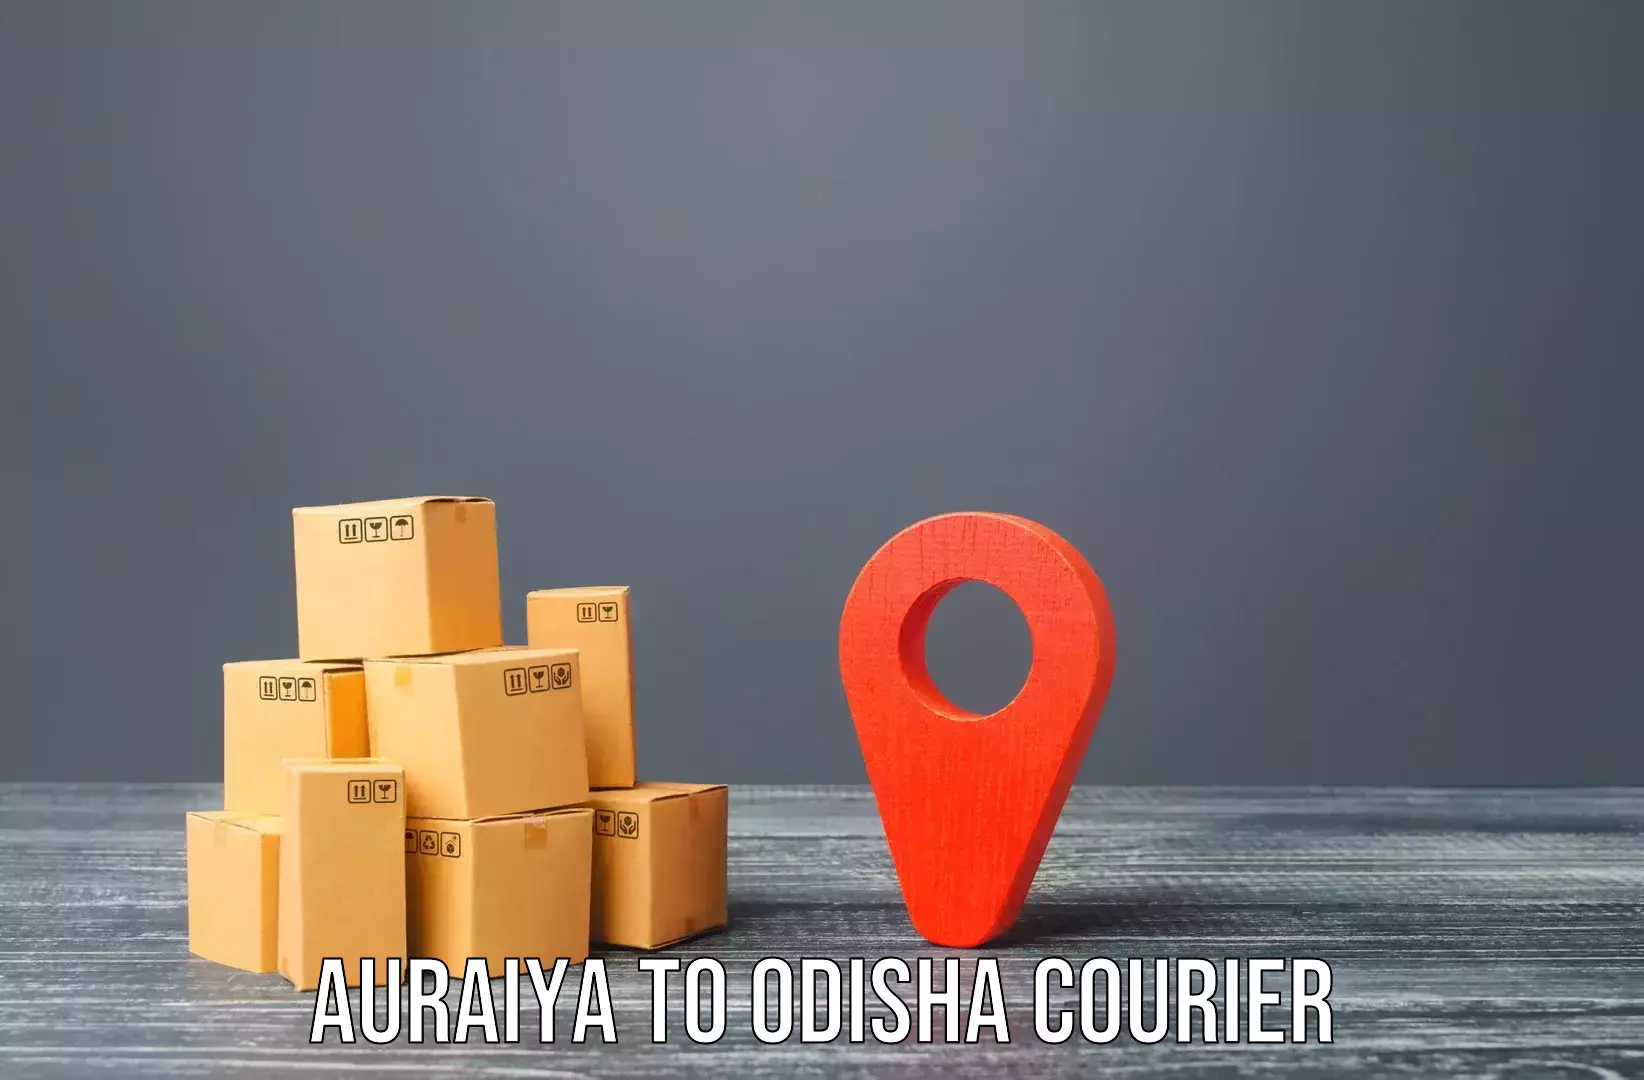 Furniture moving and handling Auraiya to Kuchinda